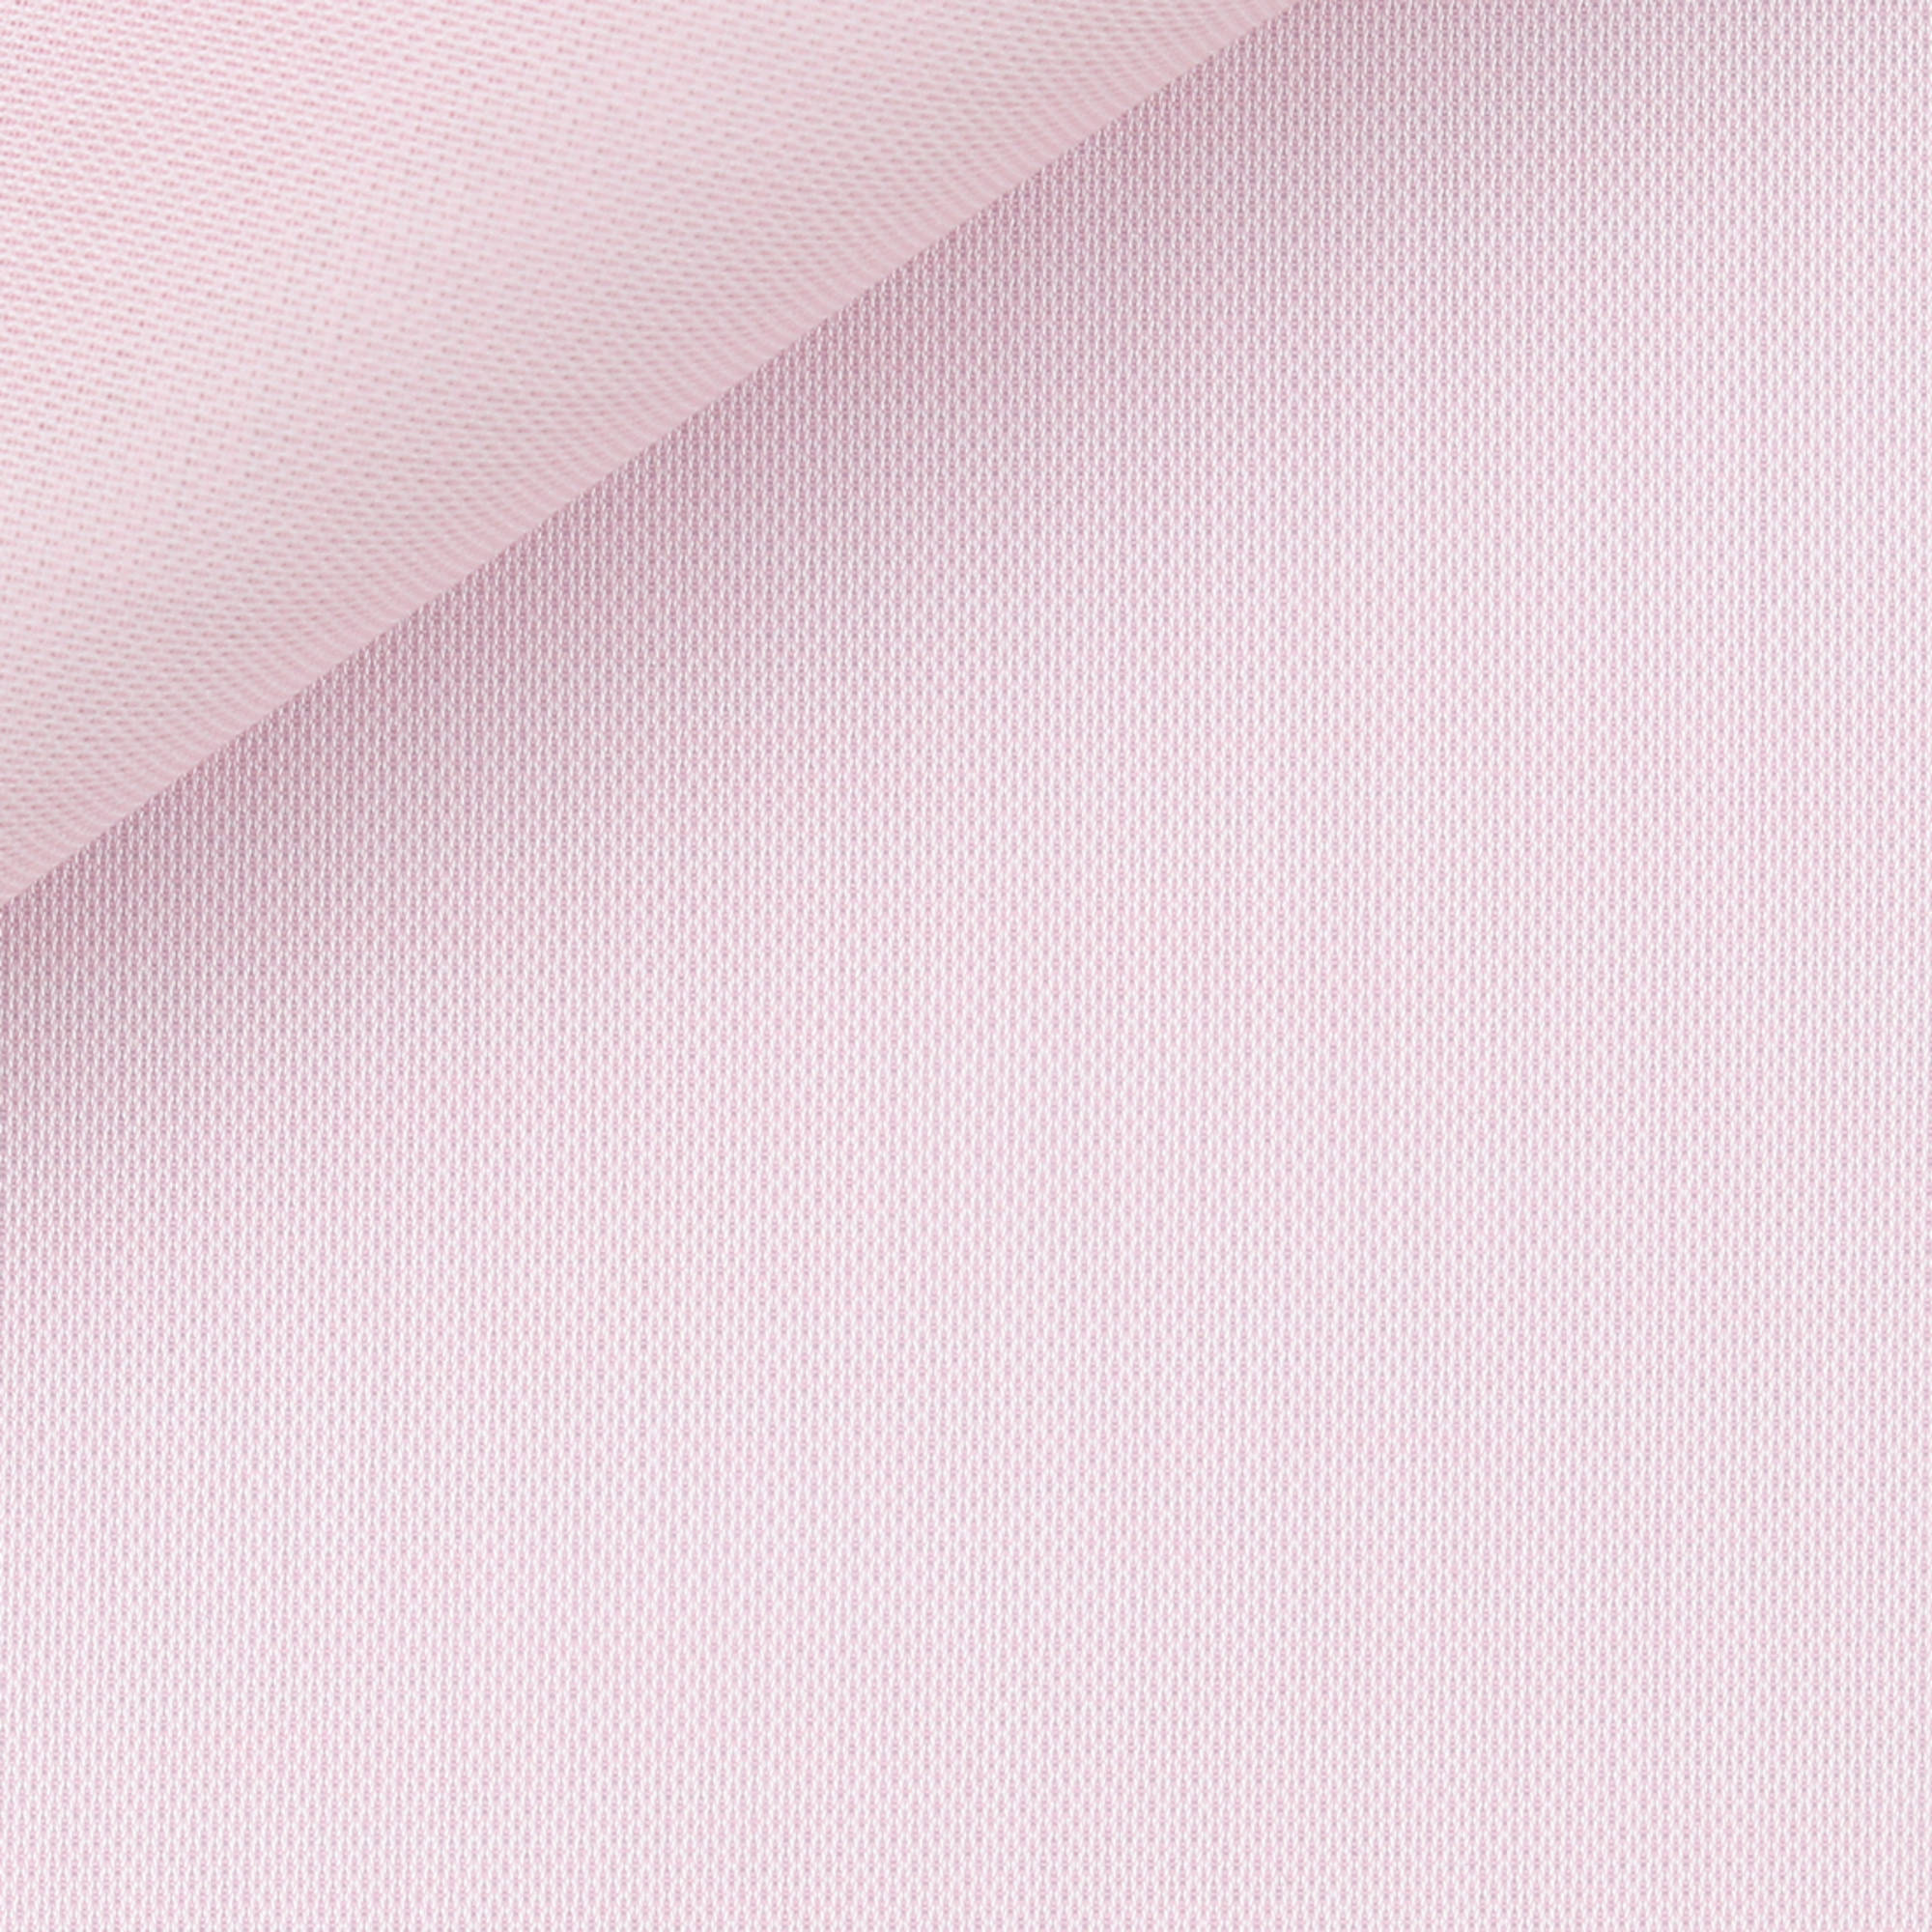 Tessuto in colore rosa chiaro camicia uomo con trama Giro Inglese